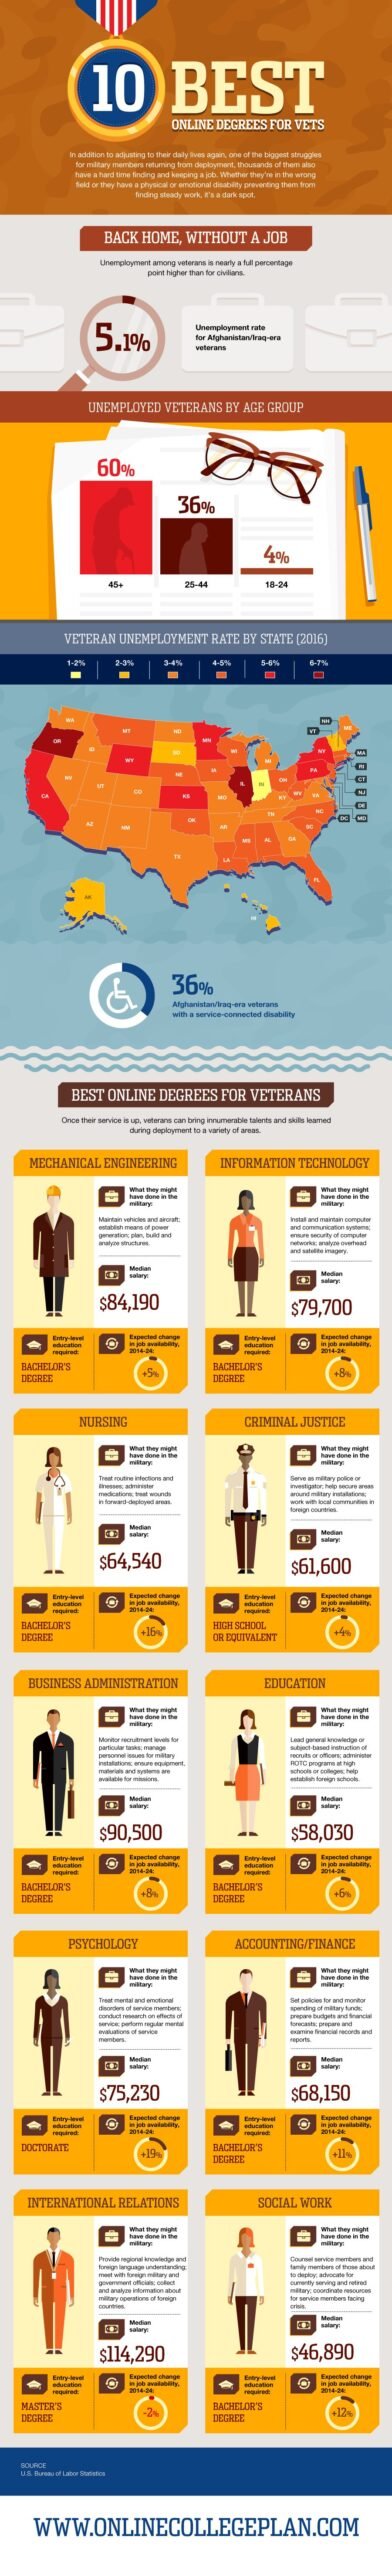 Online Degrees for Empowered Veterans